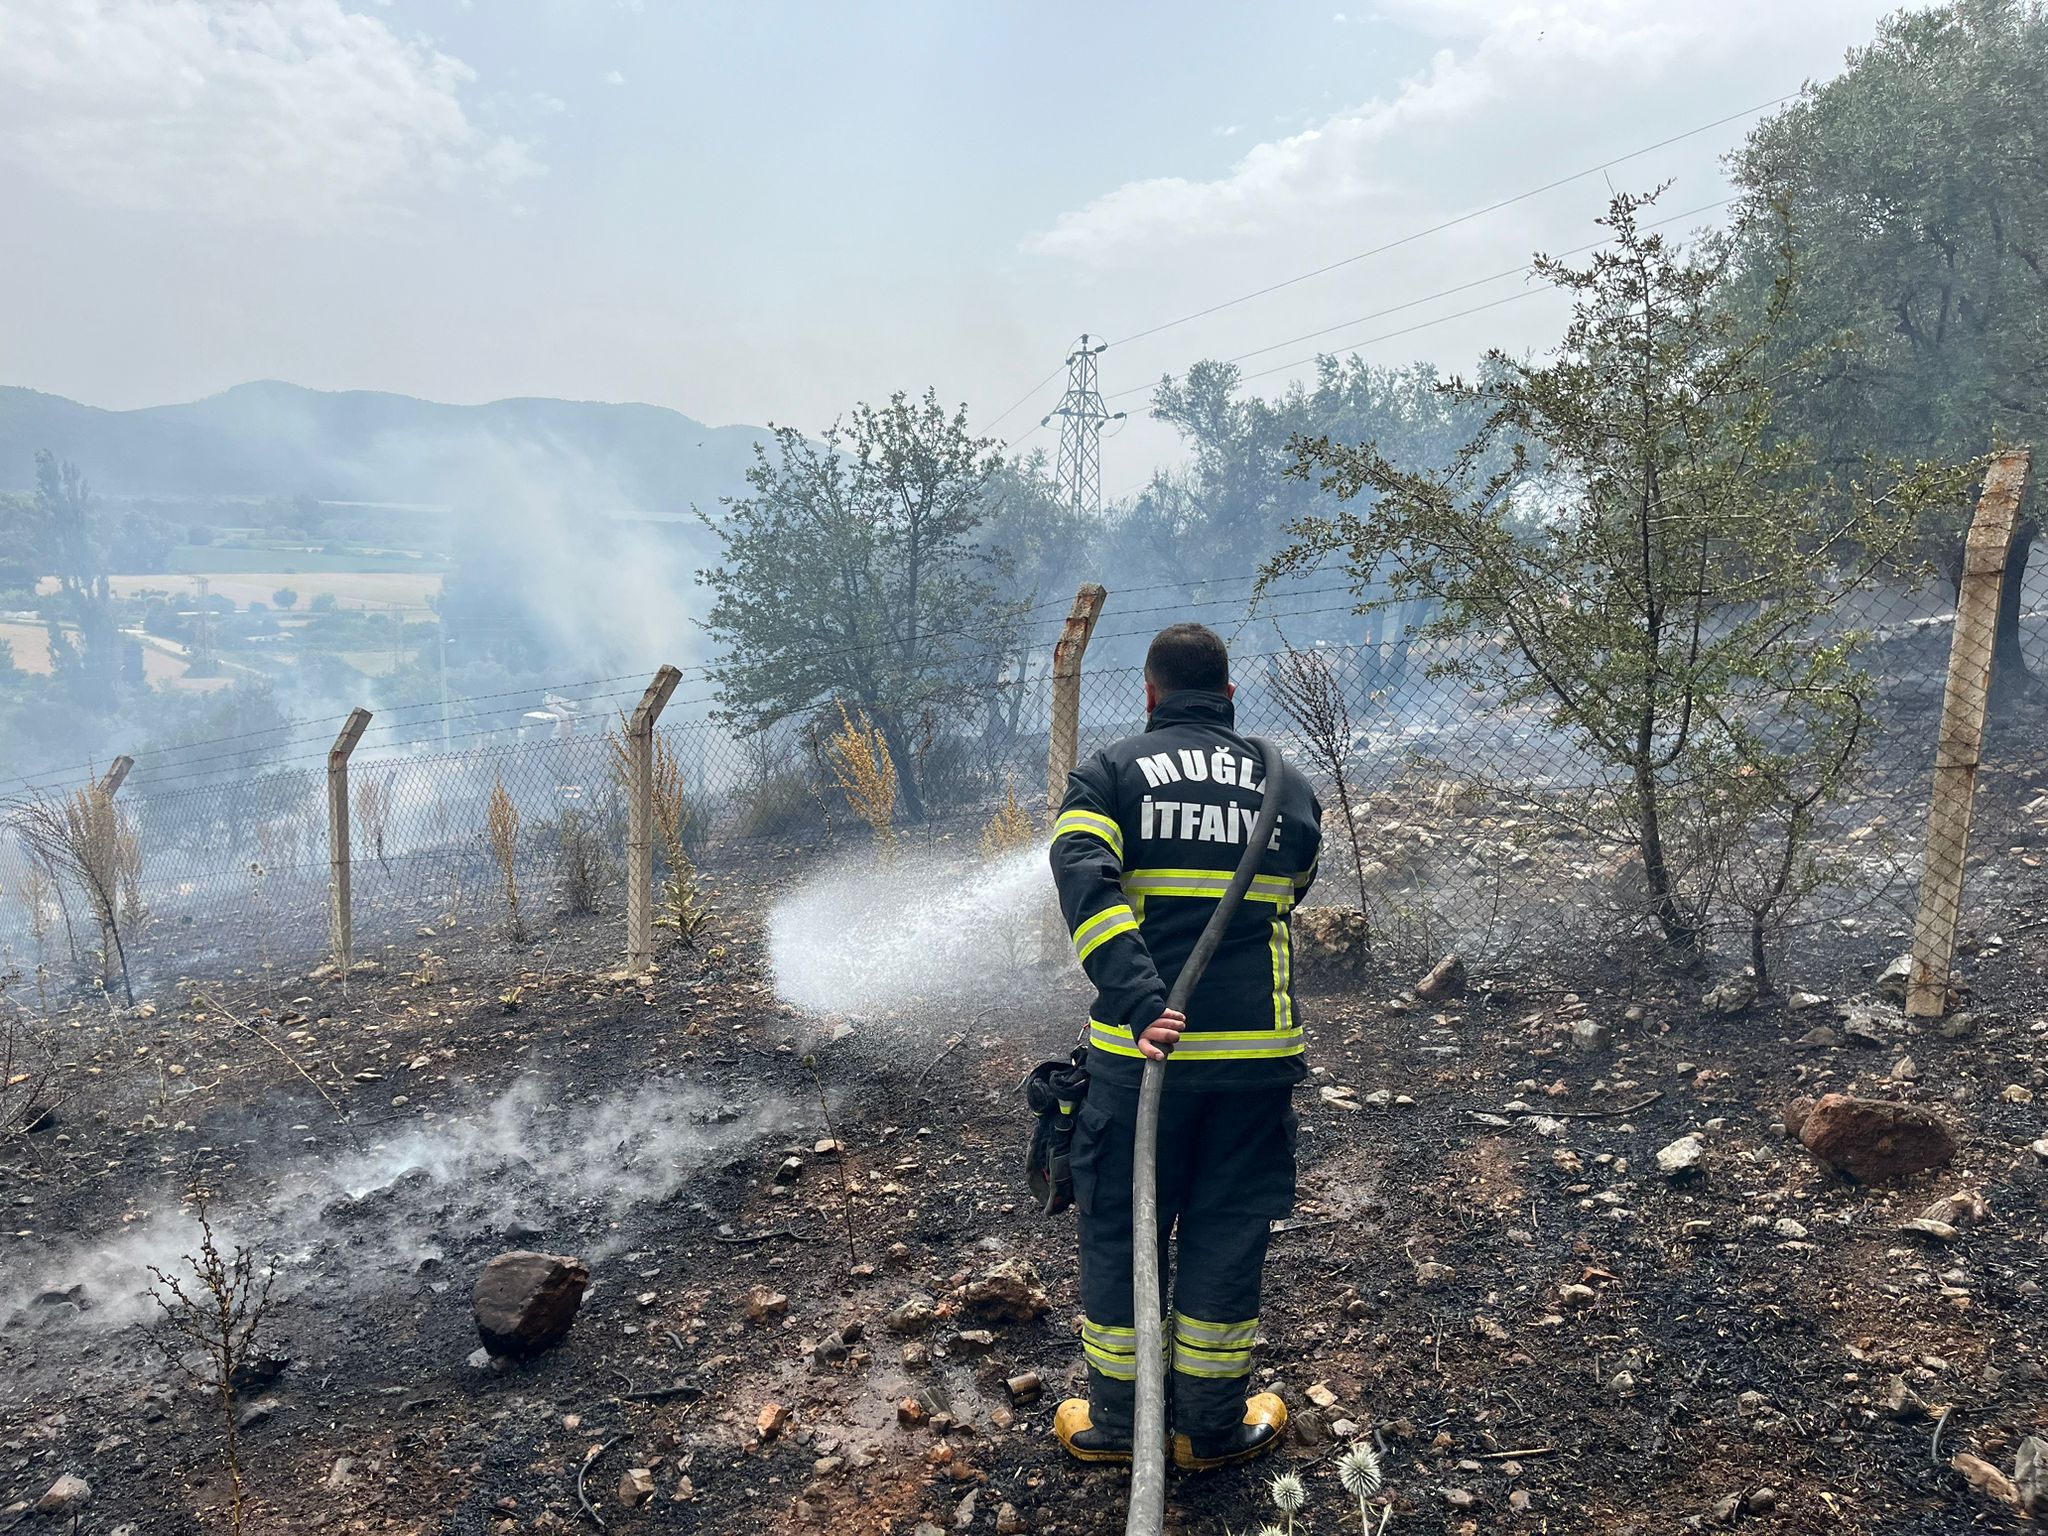 Muğla Büyükşehir Belediyesi’nden Anız Yangınlarına Karşı Uyarı (2)